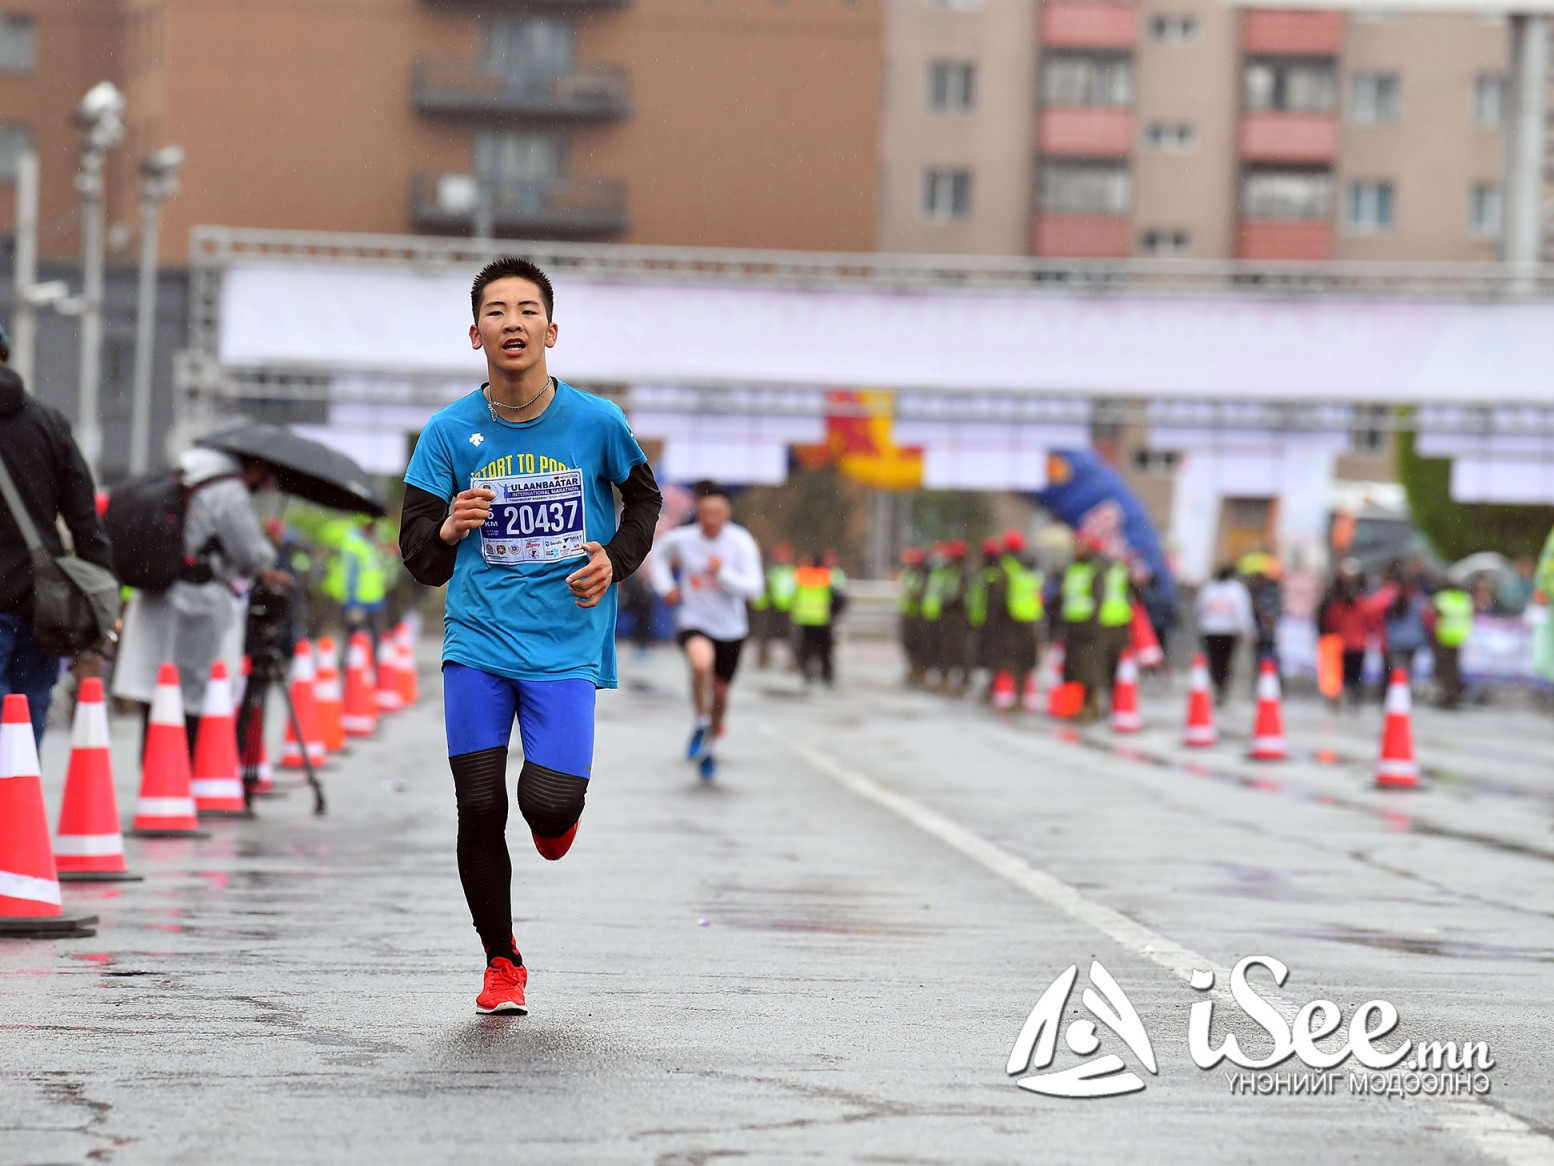 "Тал нутгийн Монгол 2022” олон улсын марафон гүйлтийн тэмцээний бүртгэл эхэлжээ